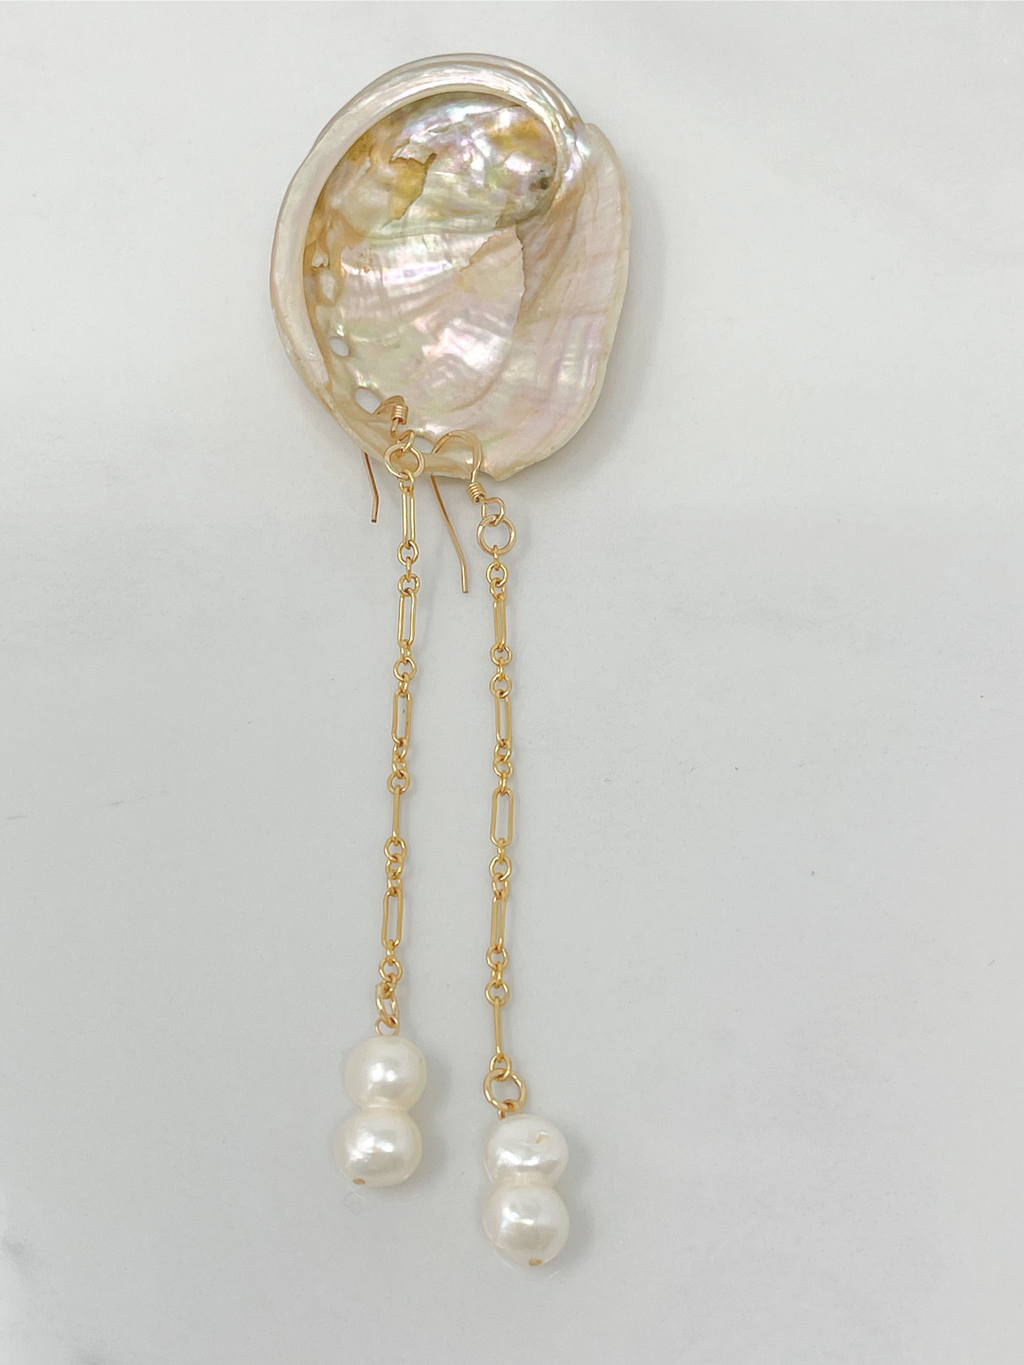 La Jolla Pearl earrings